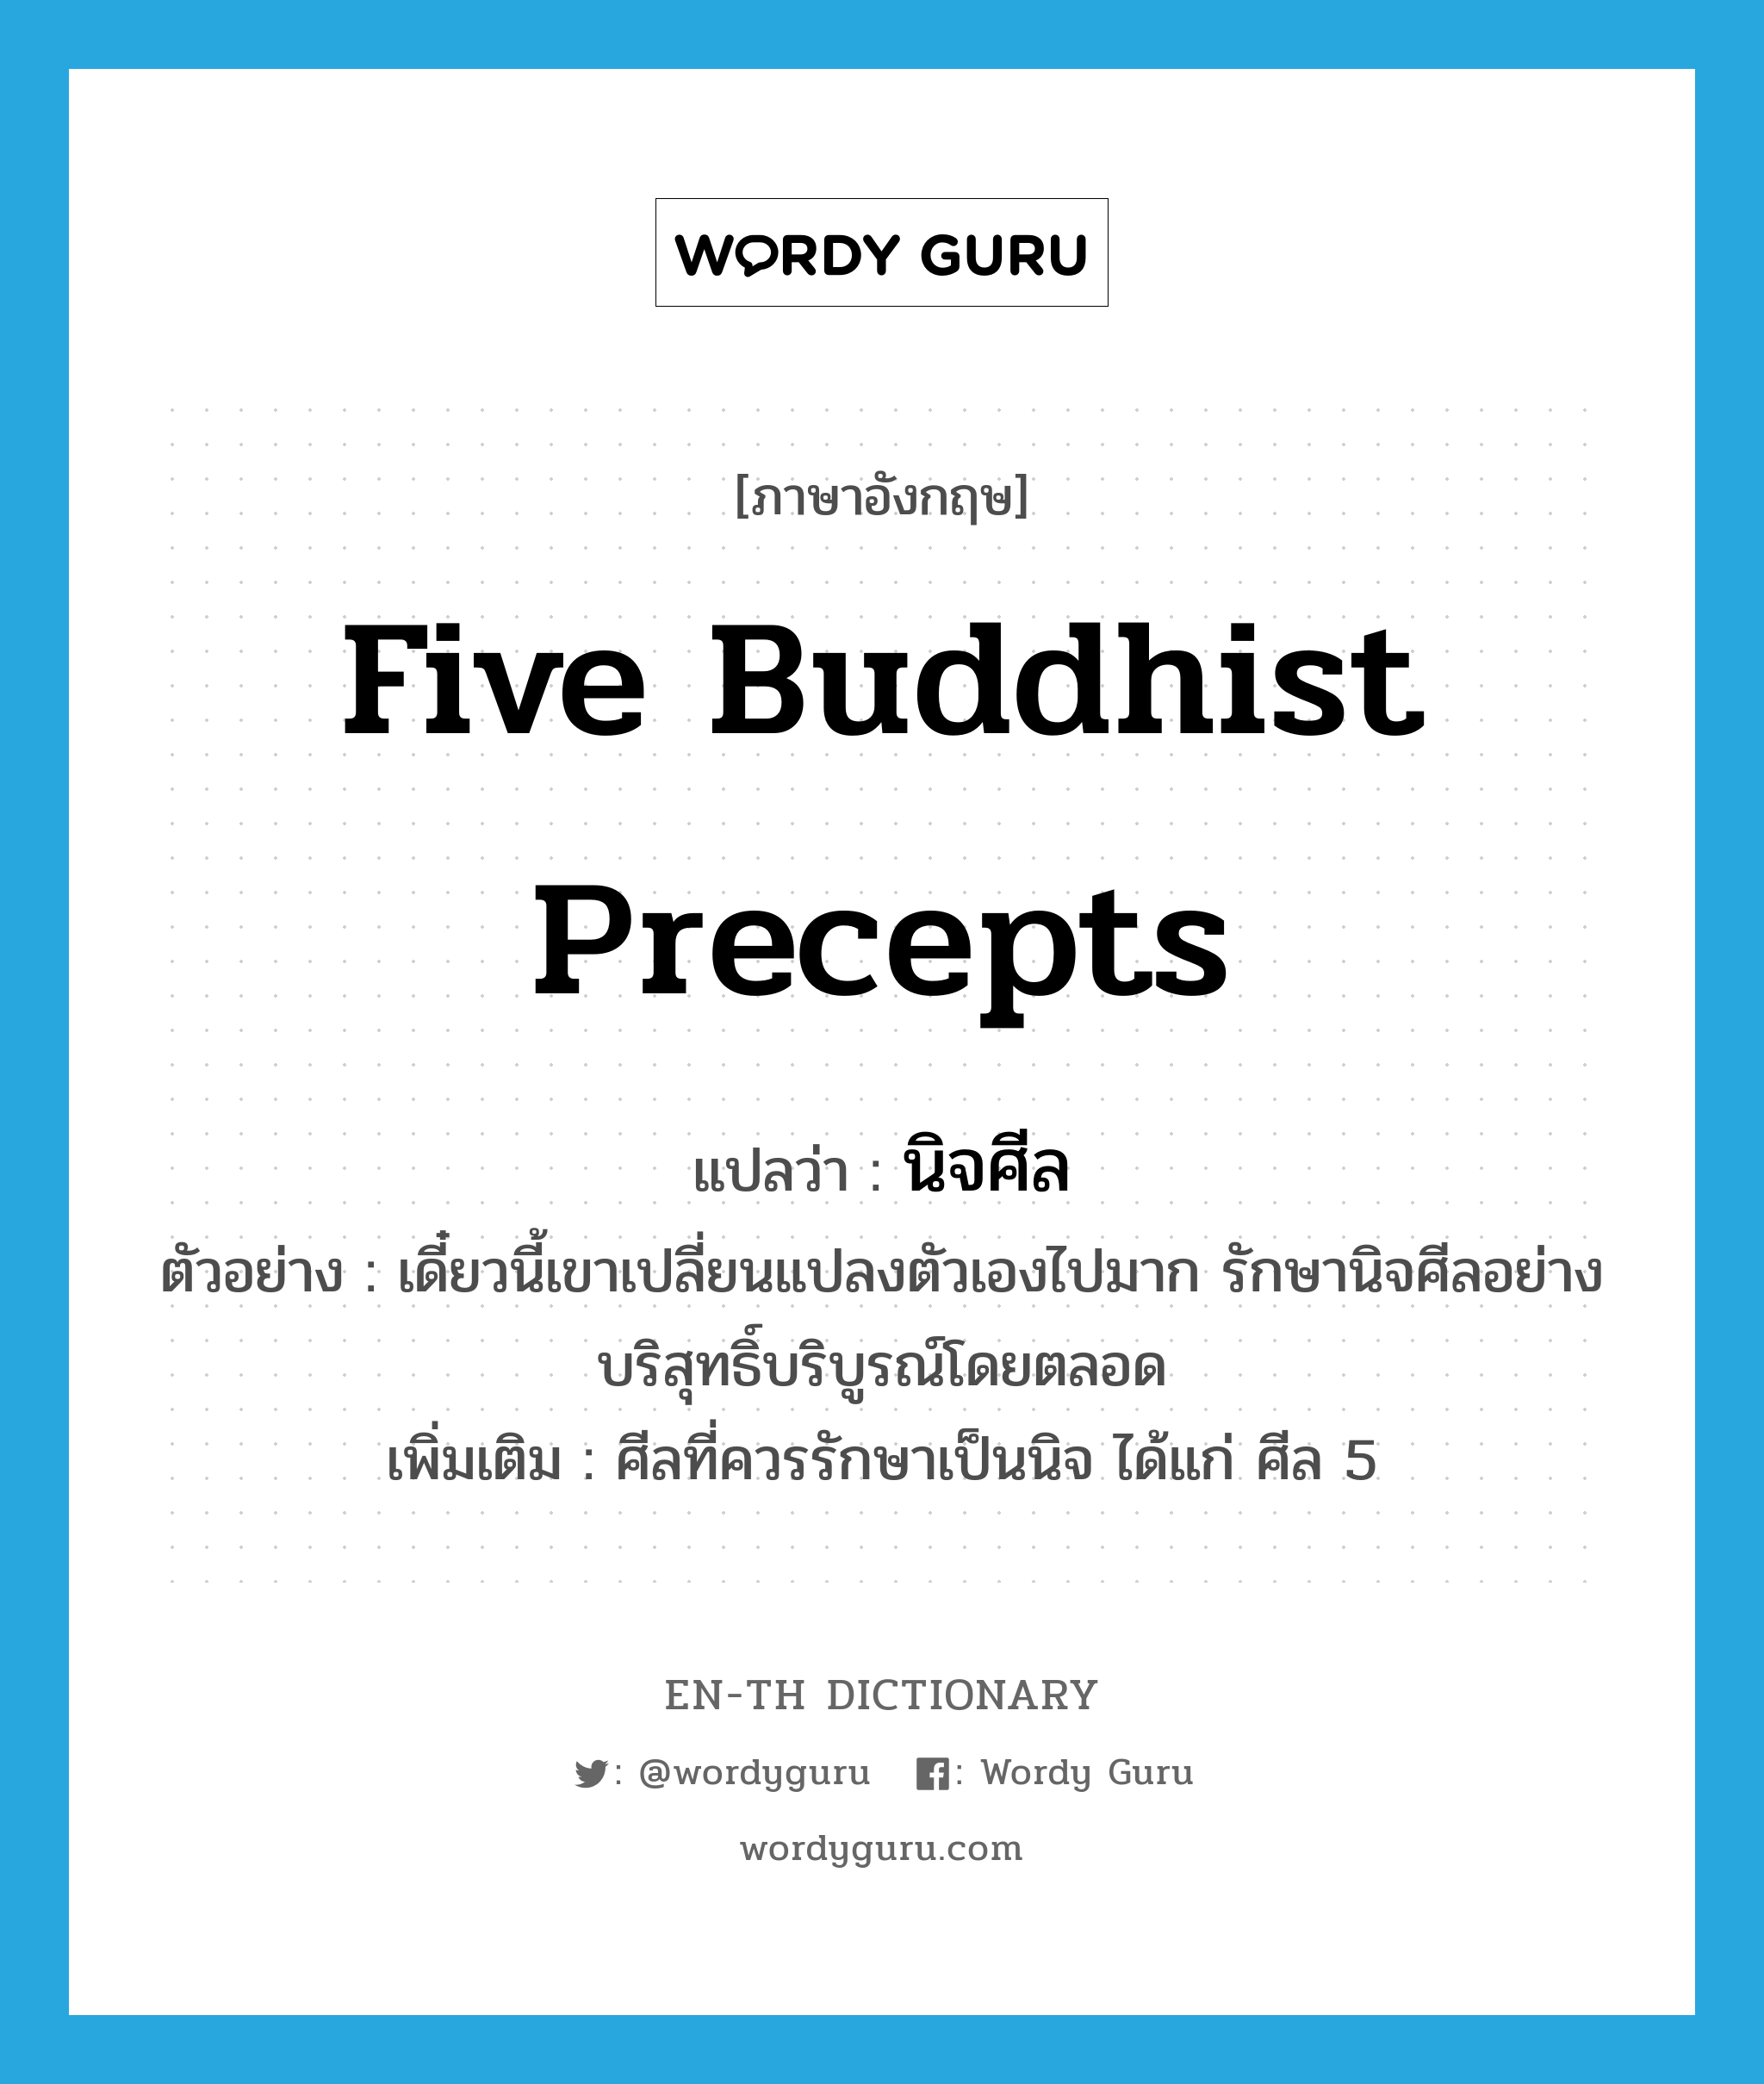 Five Buddhist Precepts แปลว่า?, คำศัพท์ภาษาอังกฤษ Five Buddhist Precepts แปลว่า นิจศีล ประเภท N ตัวอย่าง เดี๋ยวนี้เขาเปลี่ยนแปลงตัวเองไปมาก รักษานิจศีลอย่างบริสุทธิ์บริบูรณ์โดยตลอด เพิ่มเติม ศีลที่ควรรักษาเป็นนิจ ได้แก่ ศีล 5 หมวด N